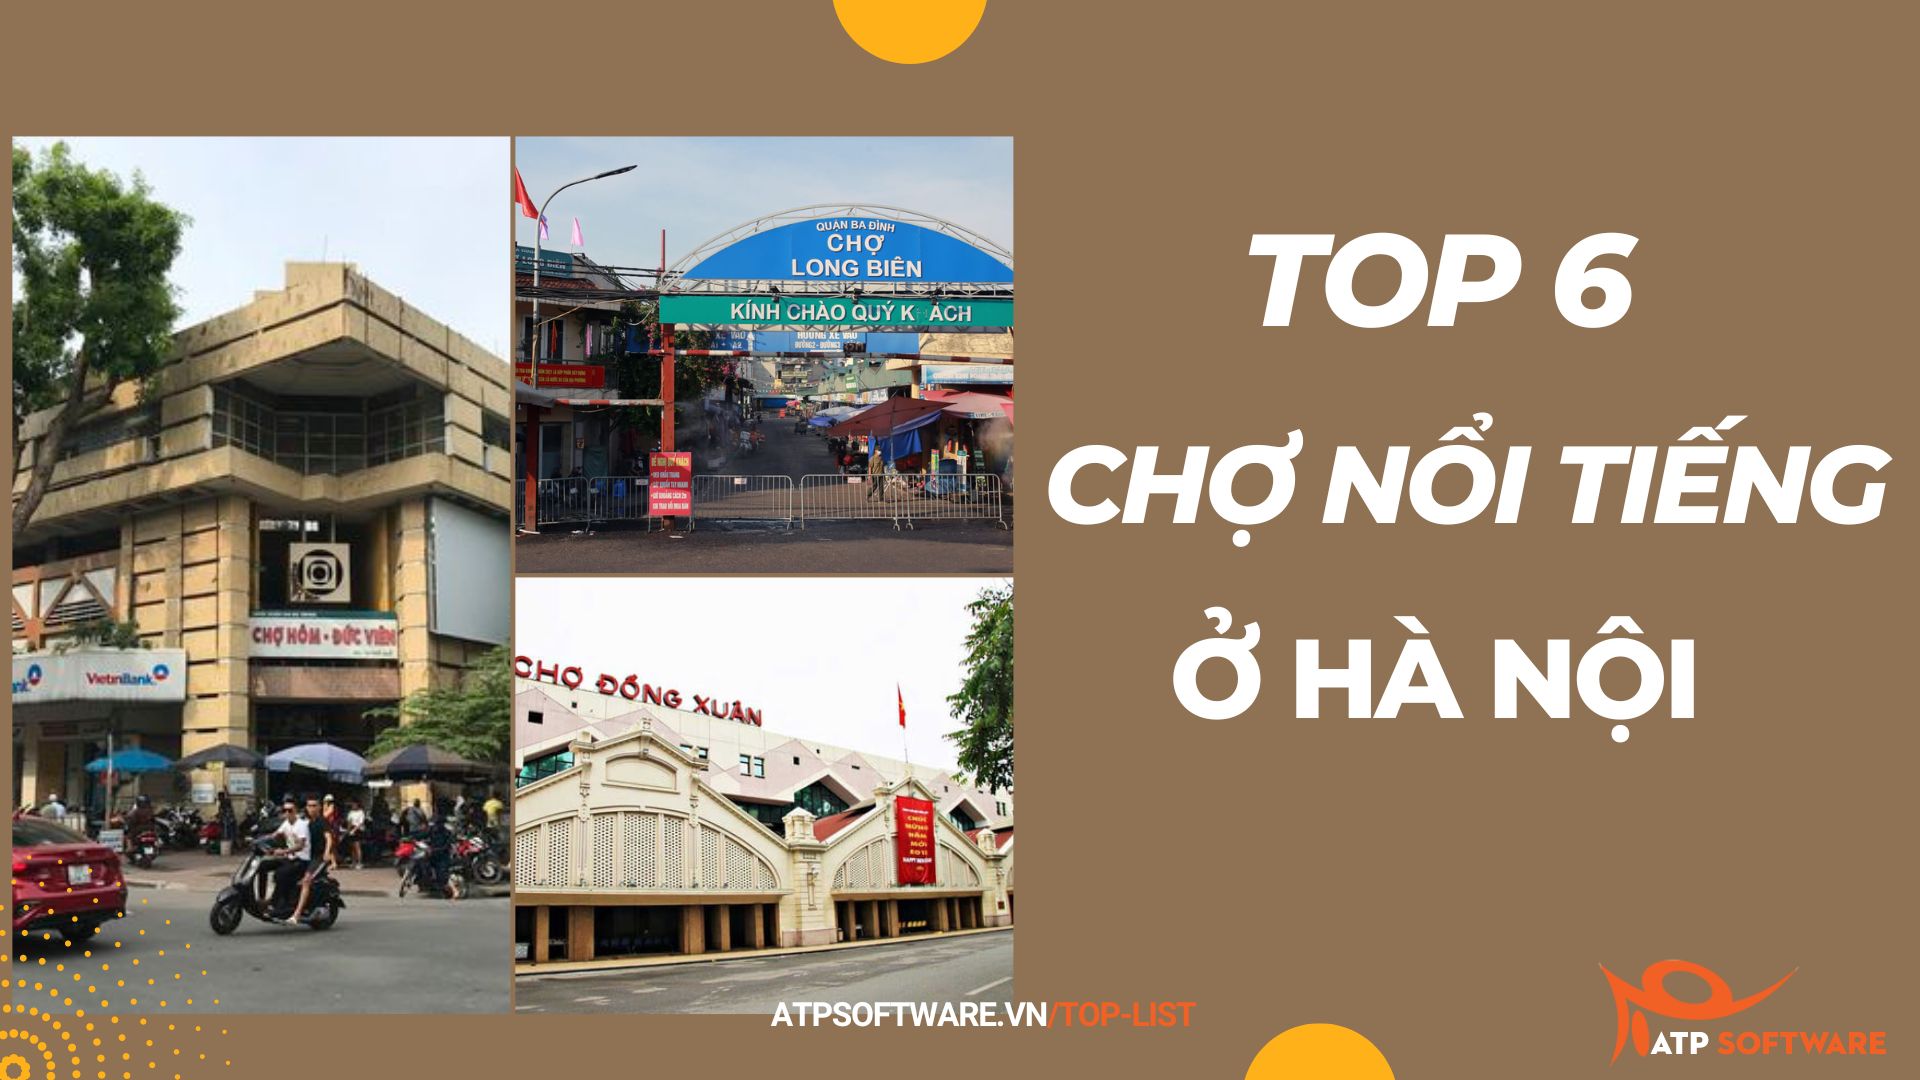 Top 6 chợ nổi tiếng ở Hà Nội